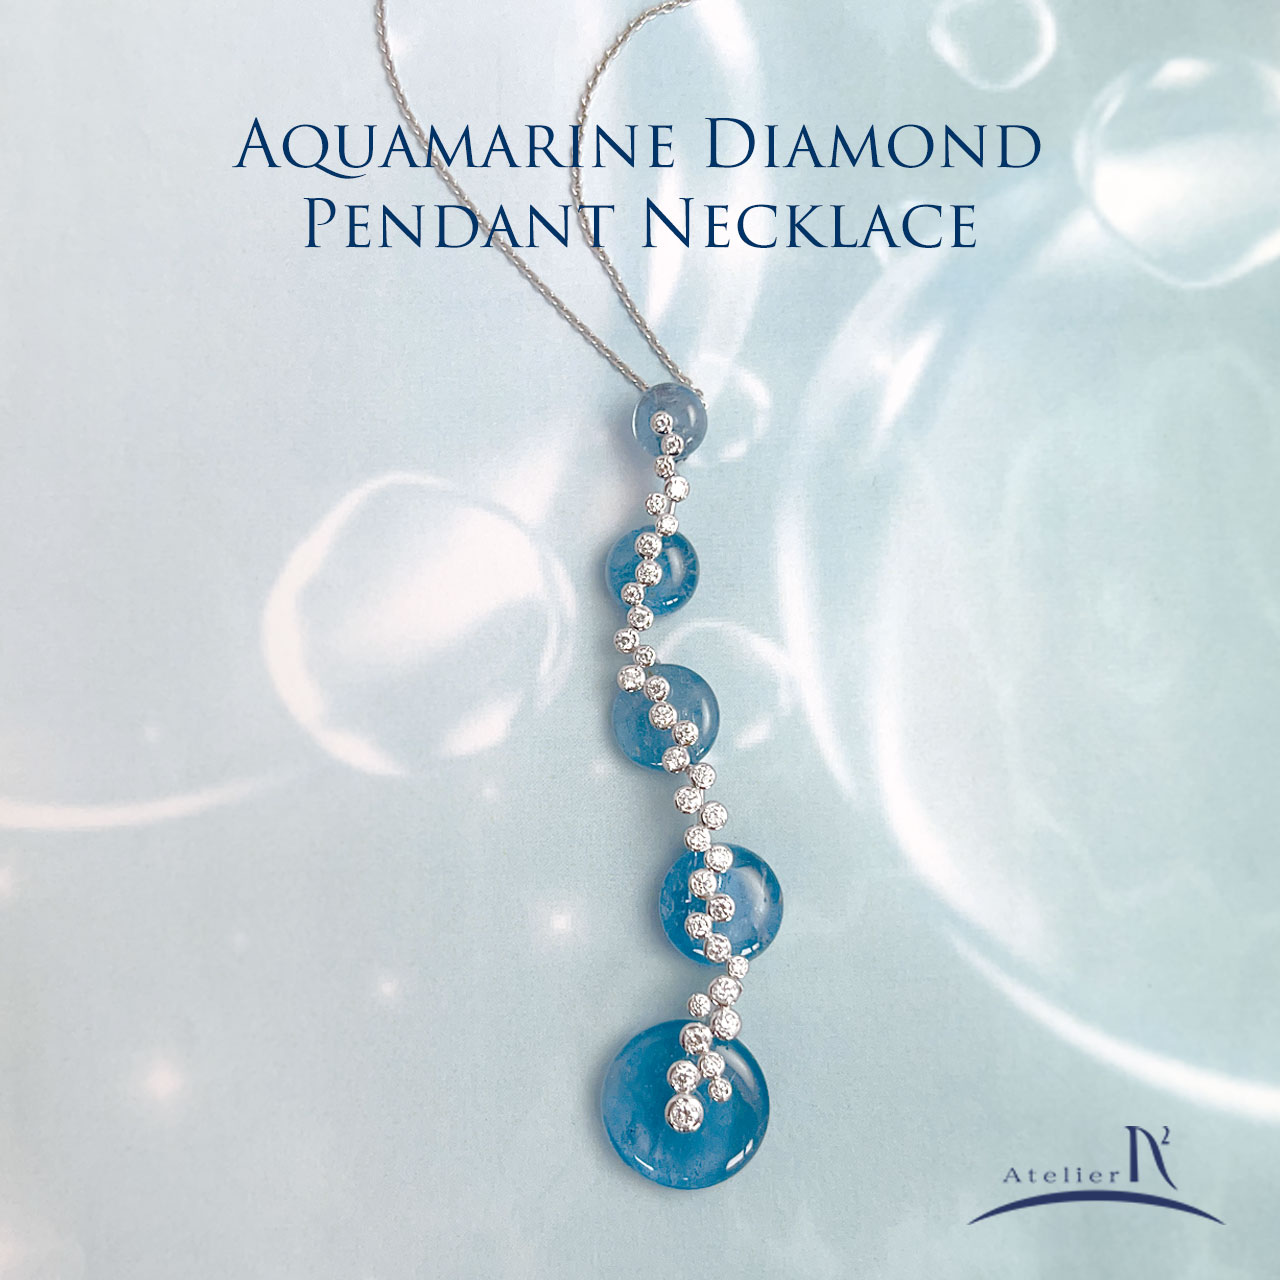 Pt900 aquamarine diamond pendant